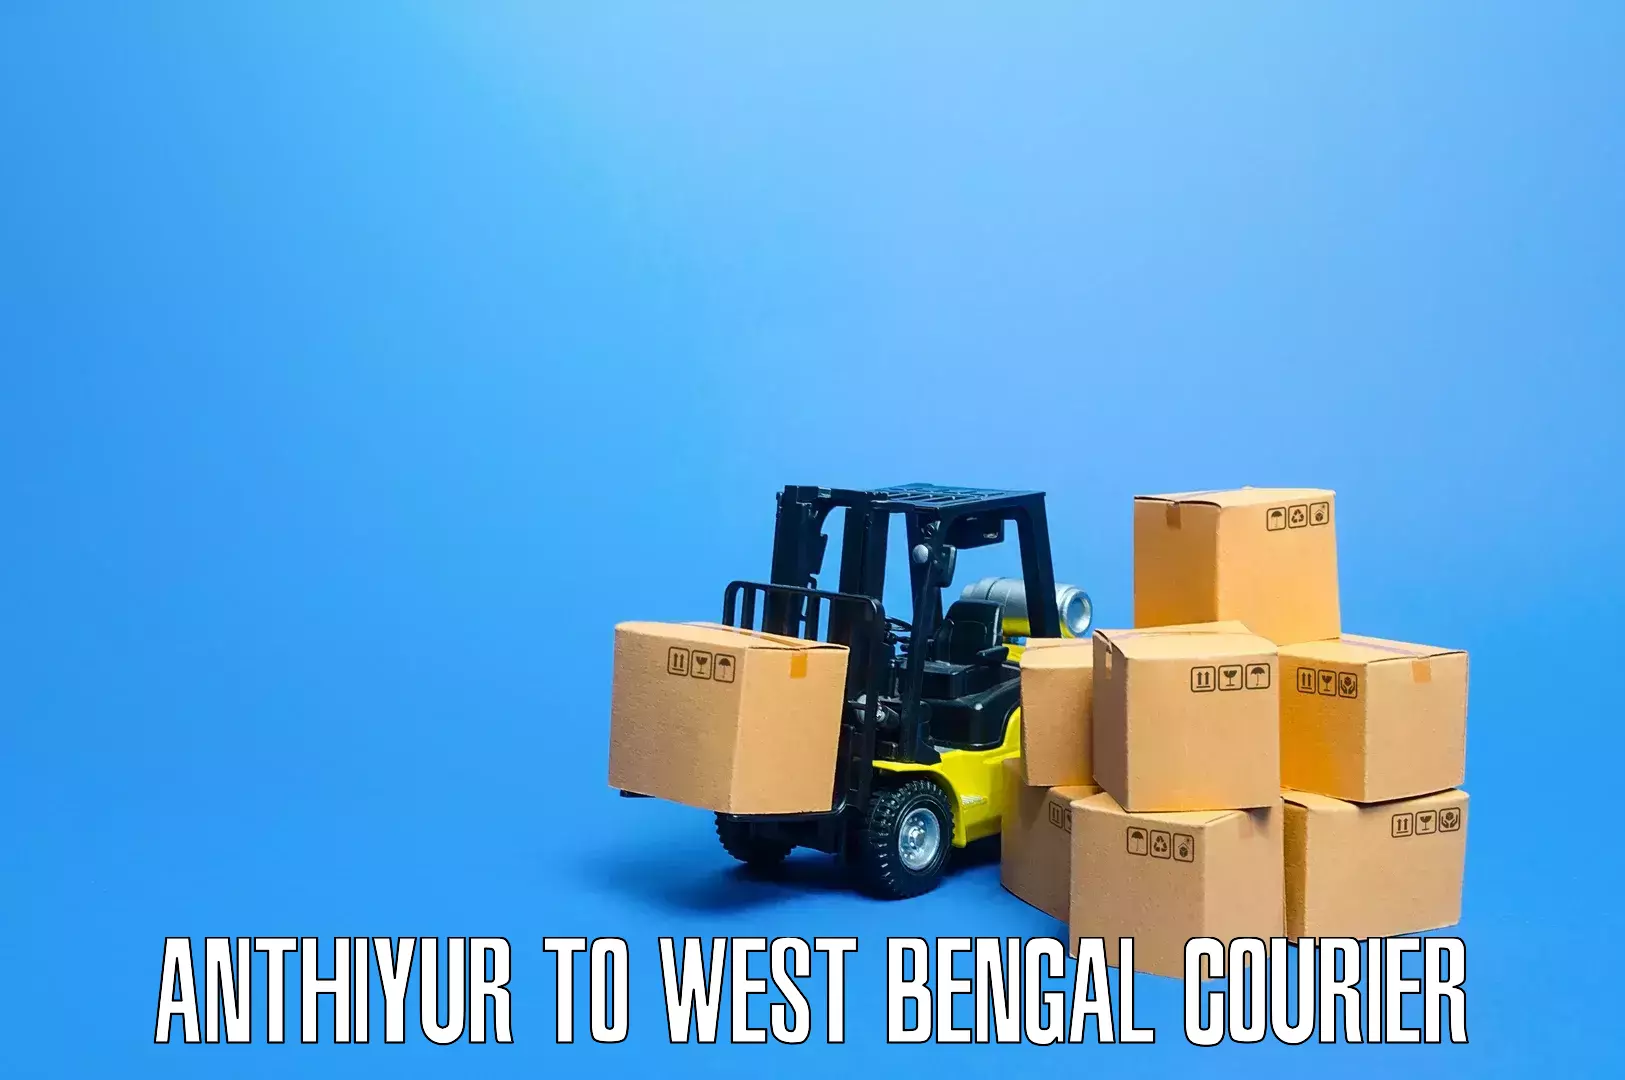 Household goods transporters Anthiyur to Algarah